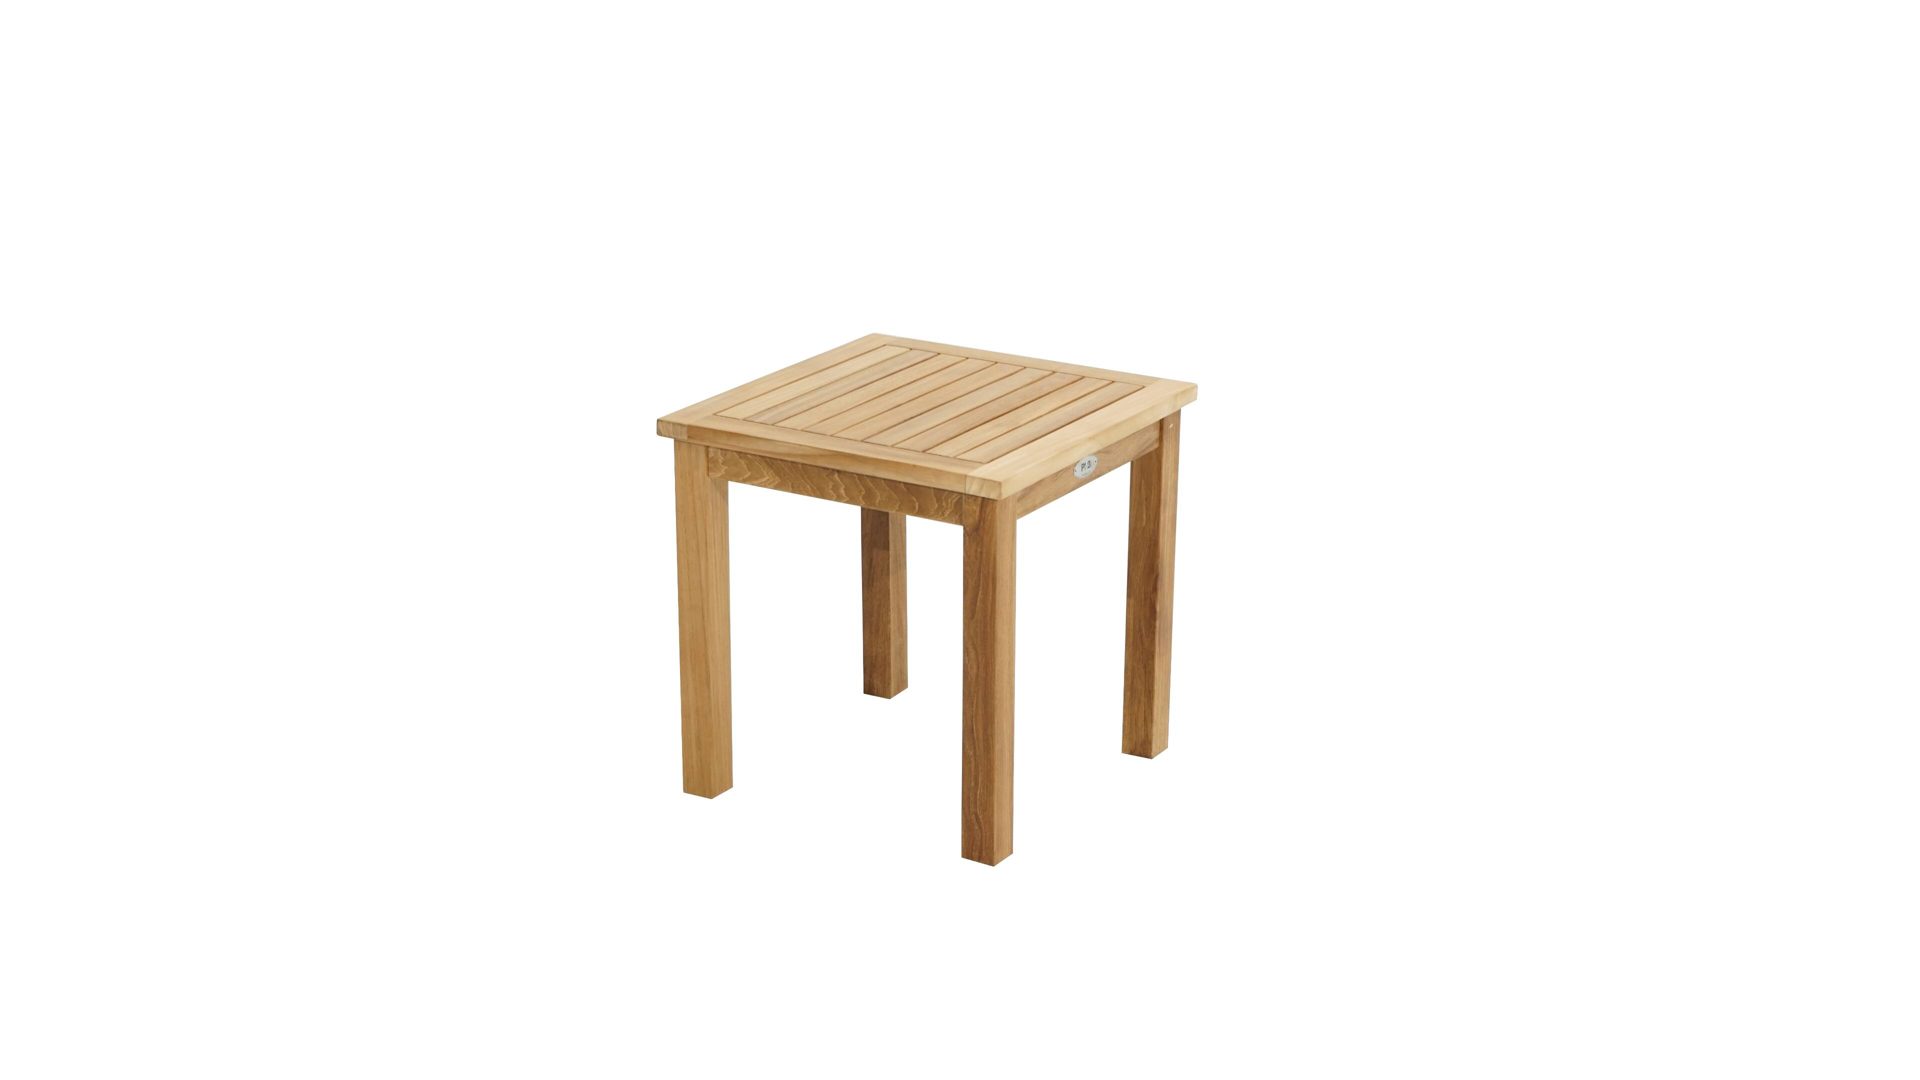 Gartentisch Ploß aus Holz in Holzfarben Ploß® Beistelltisch Tennessee als Gartenmöbel Teakholz – ca. 50 x 50 cm